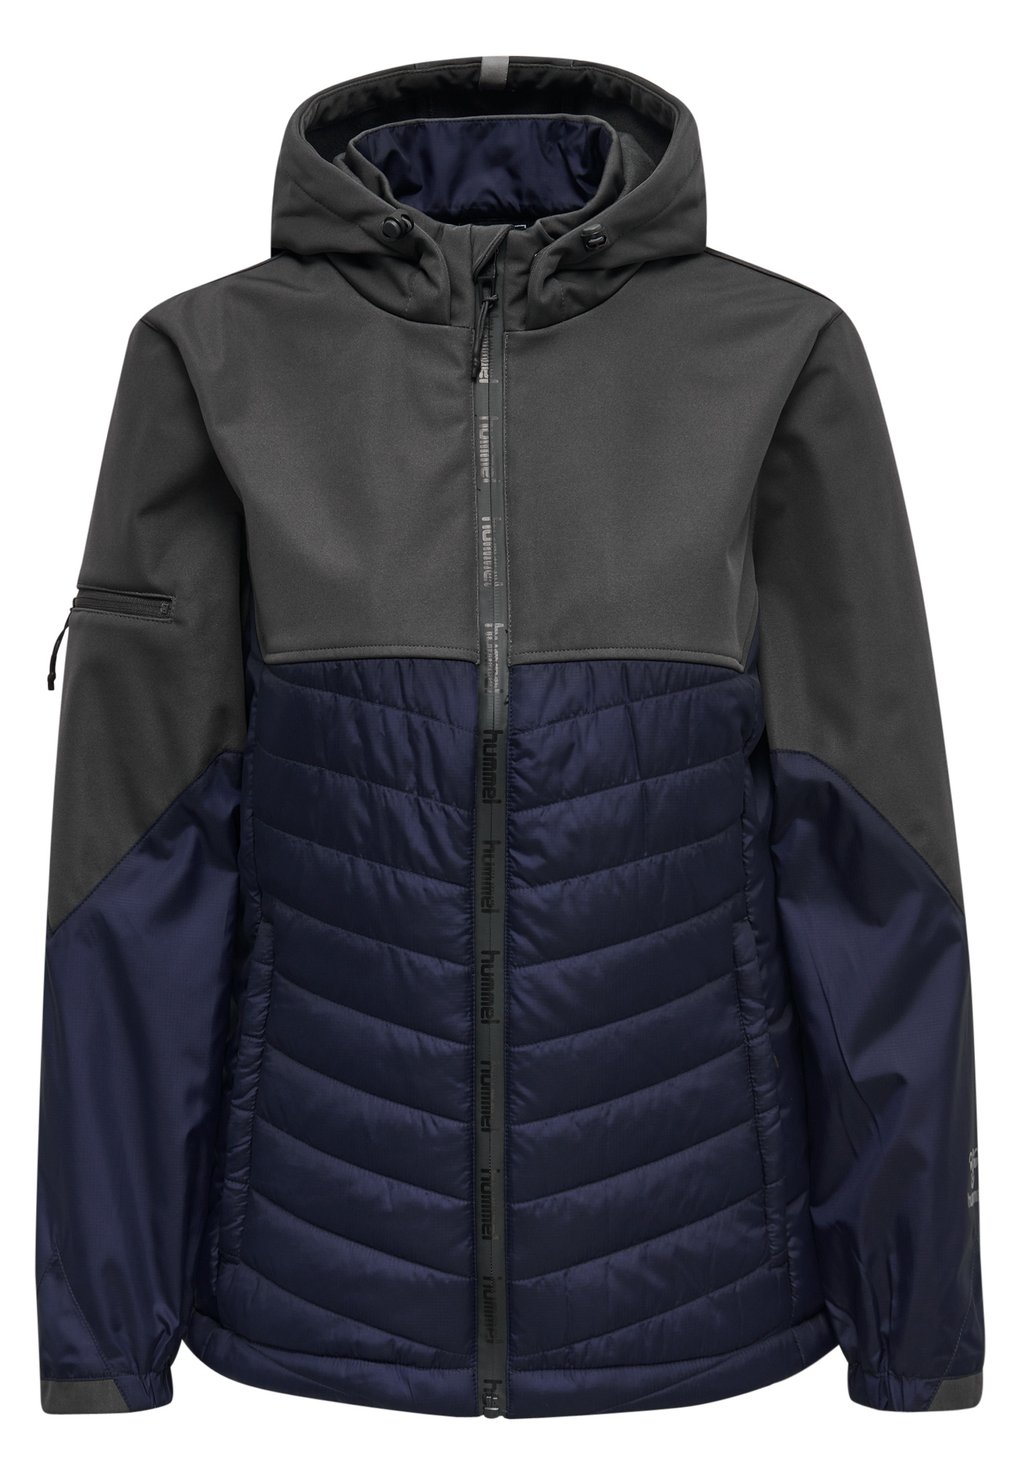 Куртка для активного отдыха Hummel, темно-серый/синий рюкзак для ноутбука rivacase 7562 grey dark blue